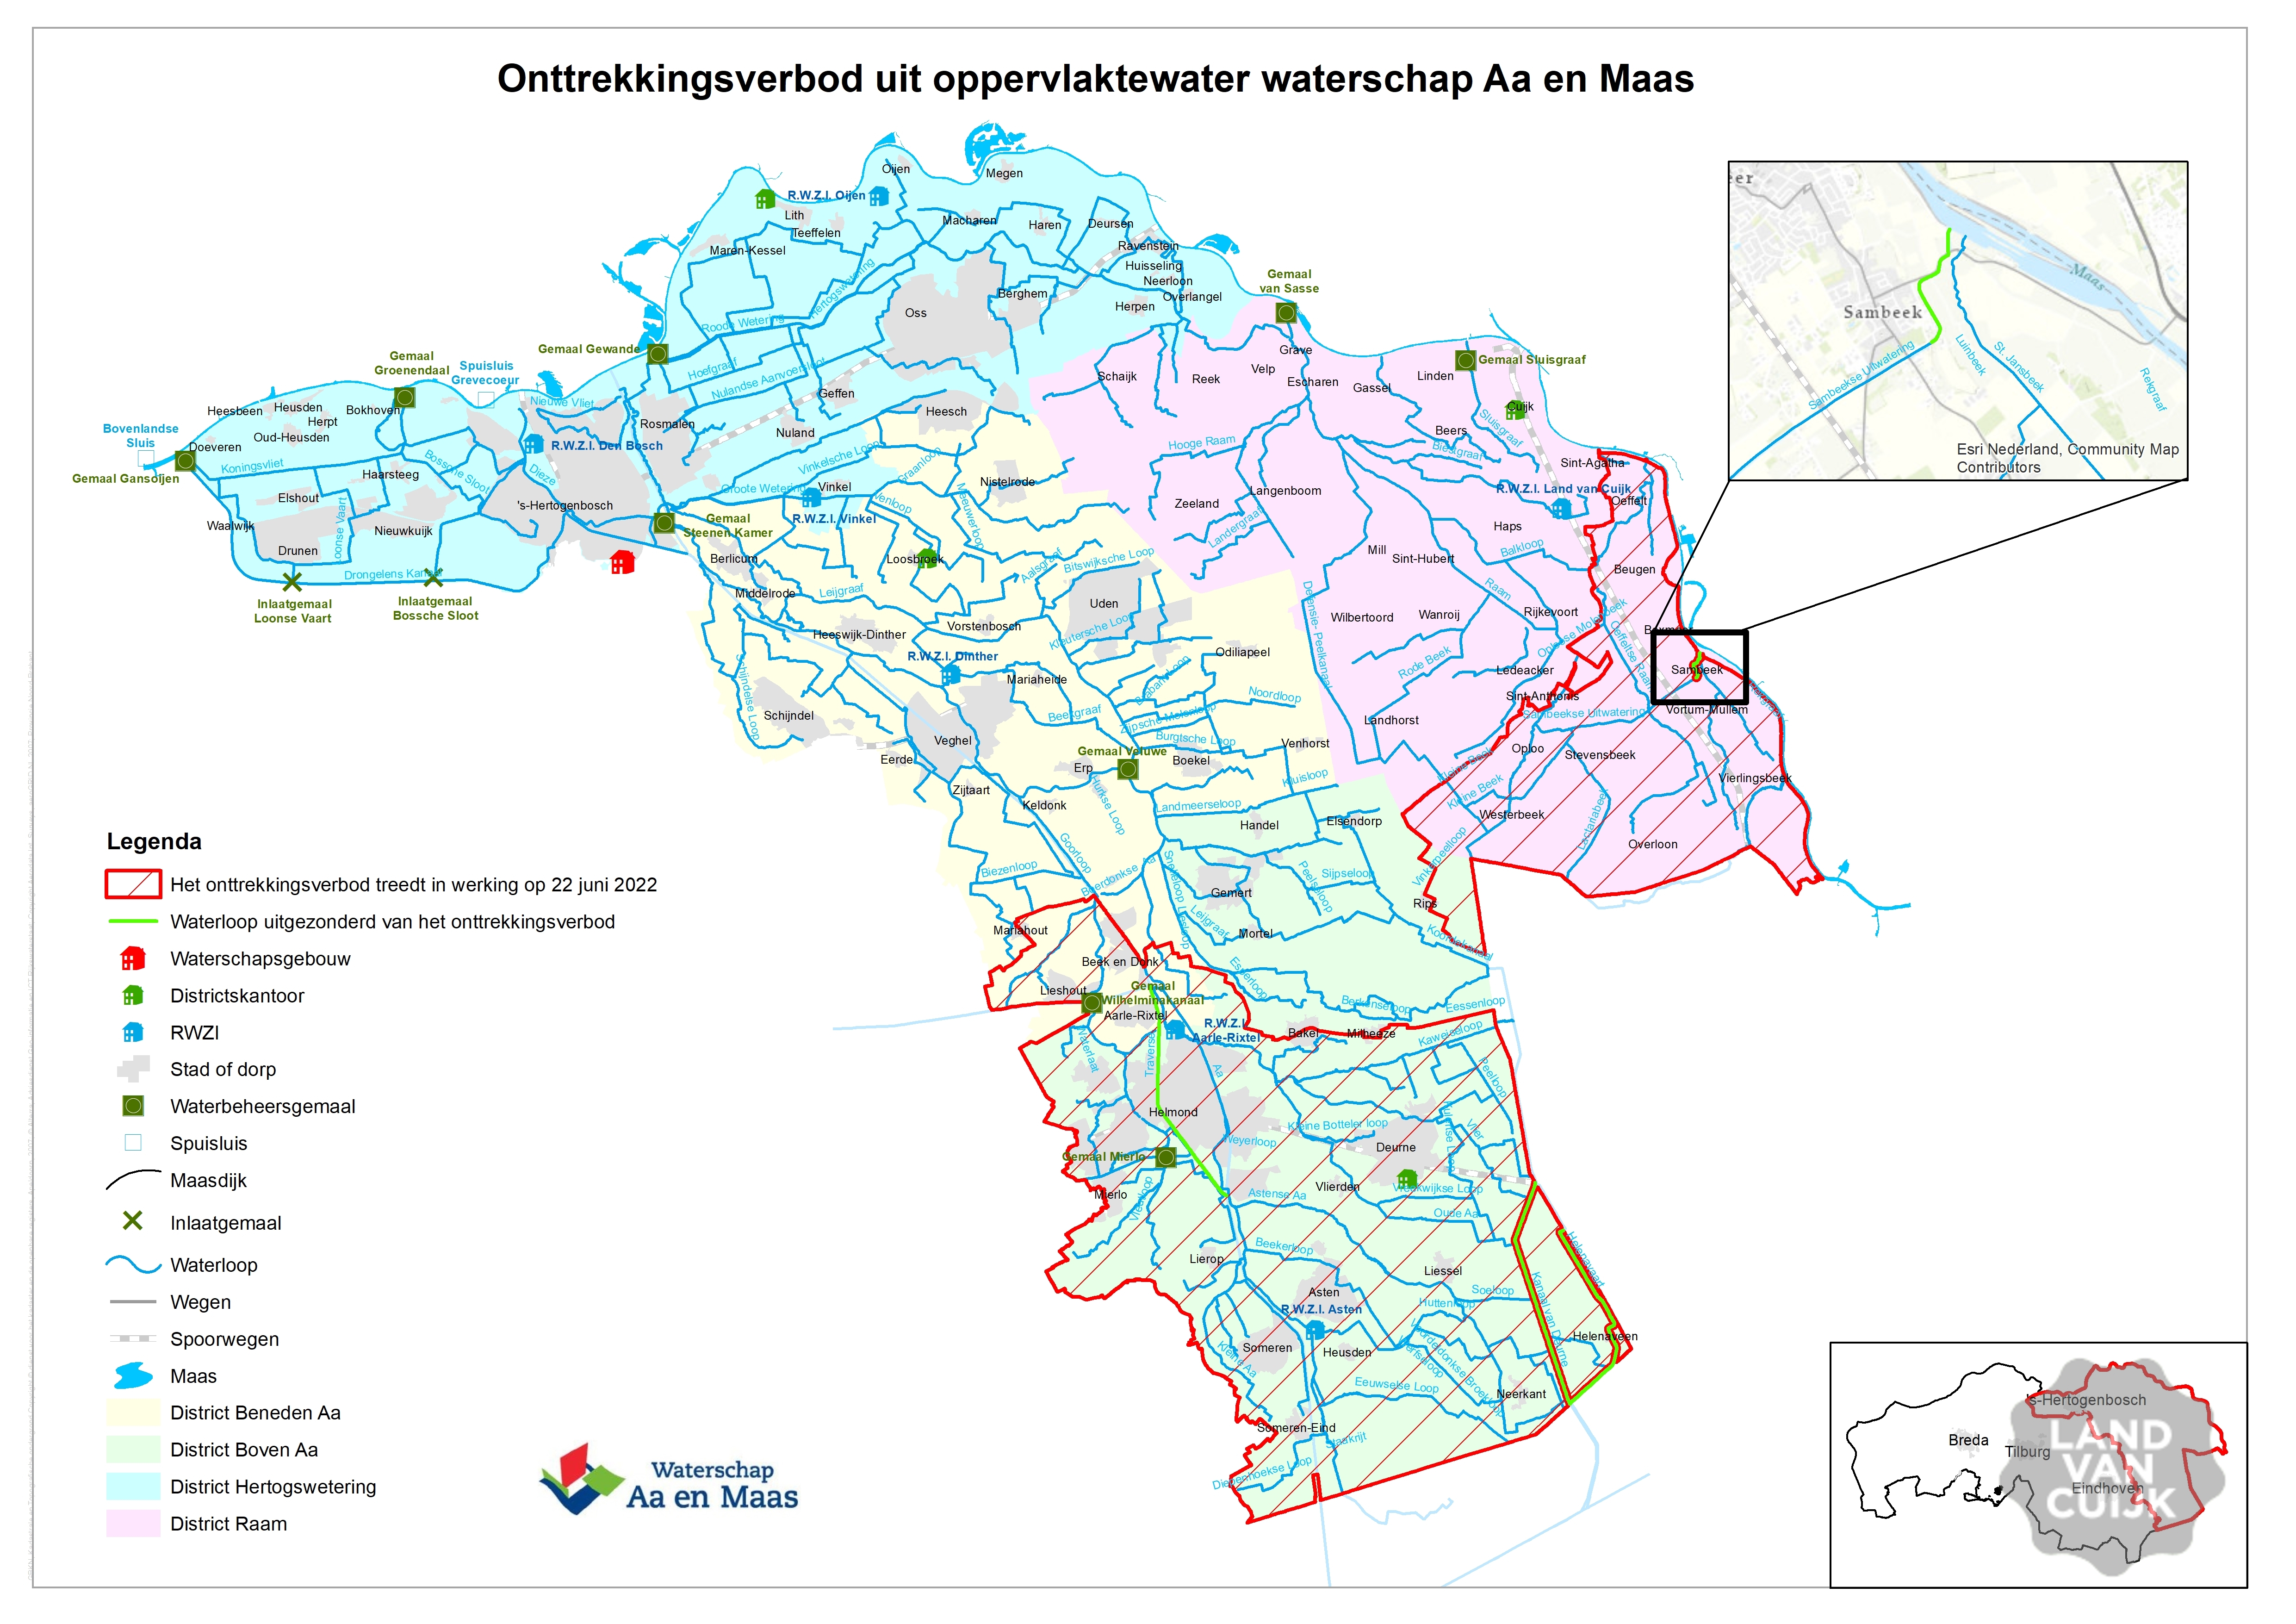 Onttrekkingsverbod uit oppervlaktewater in Zuidoost-Brabant